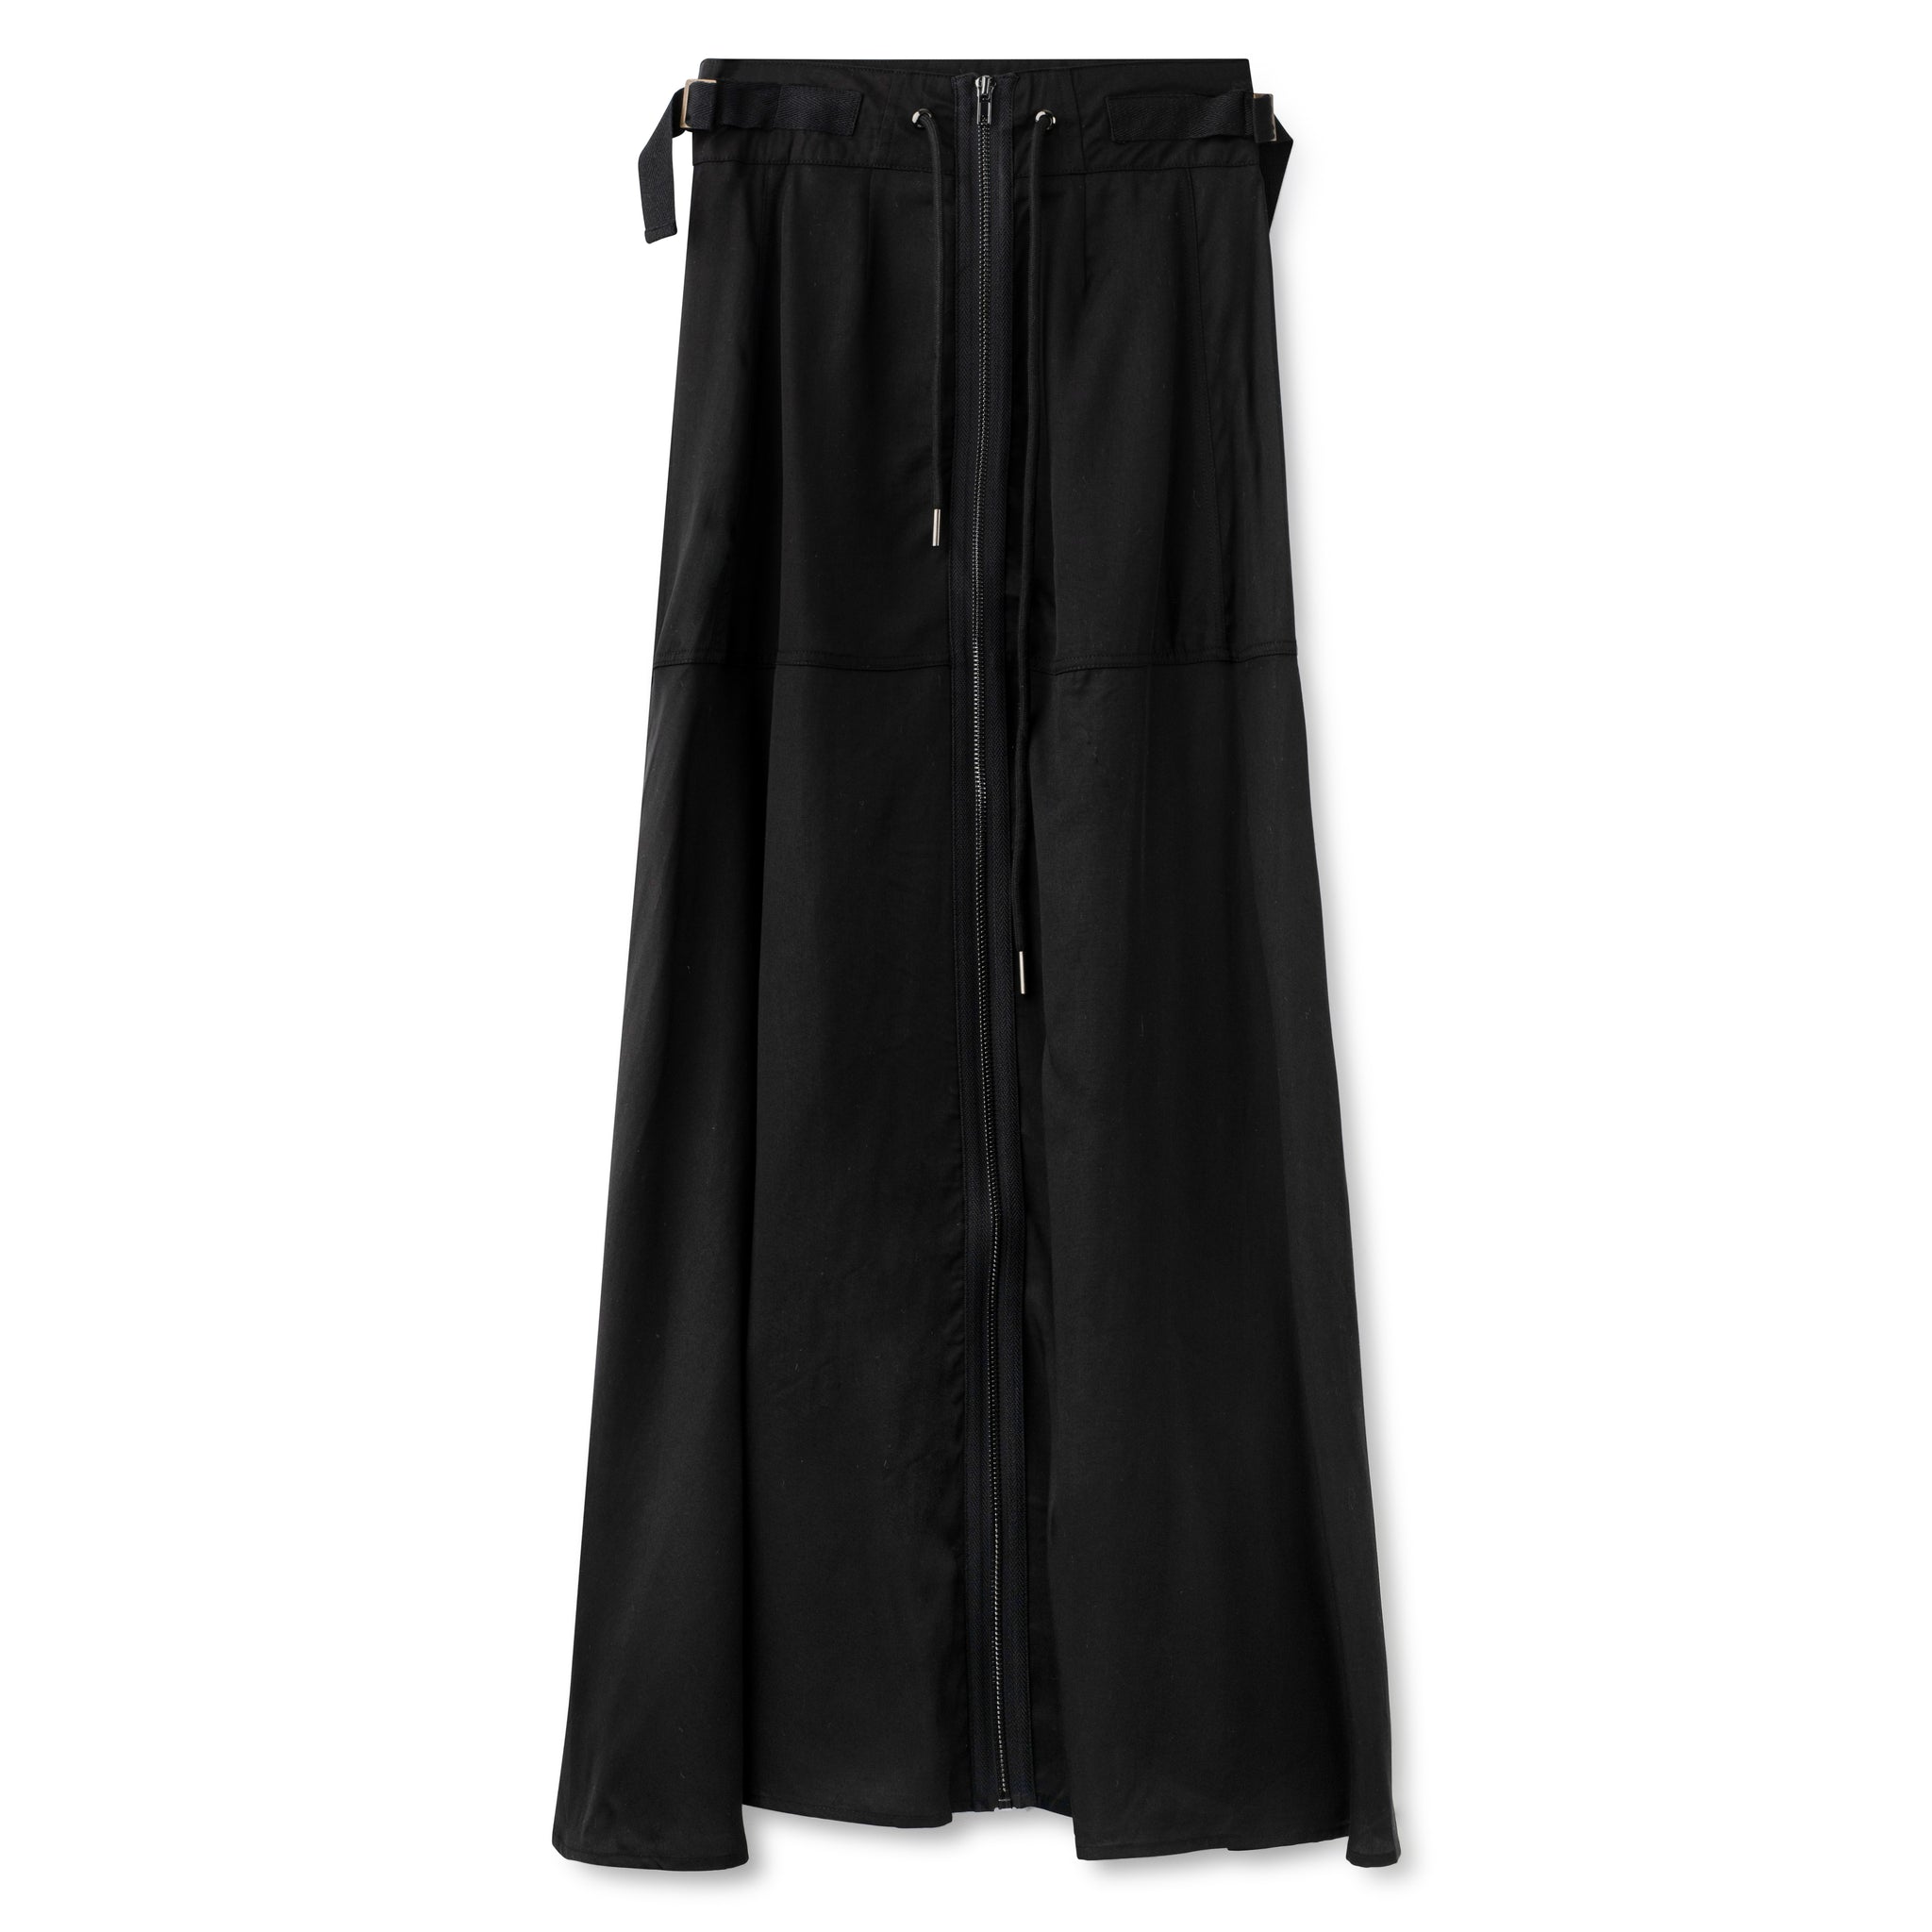 Zipper Skirt IN: Black